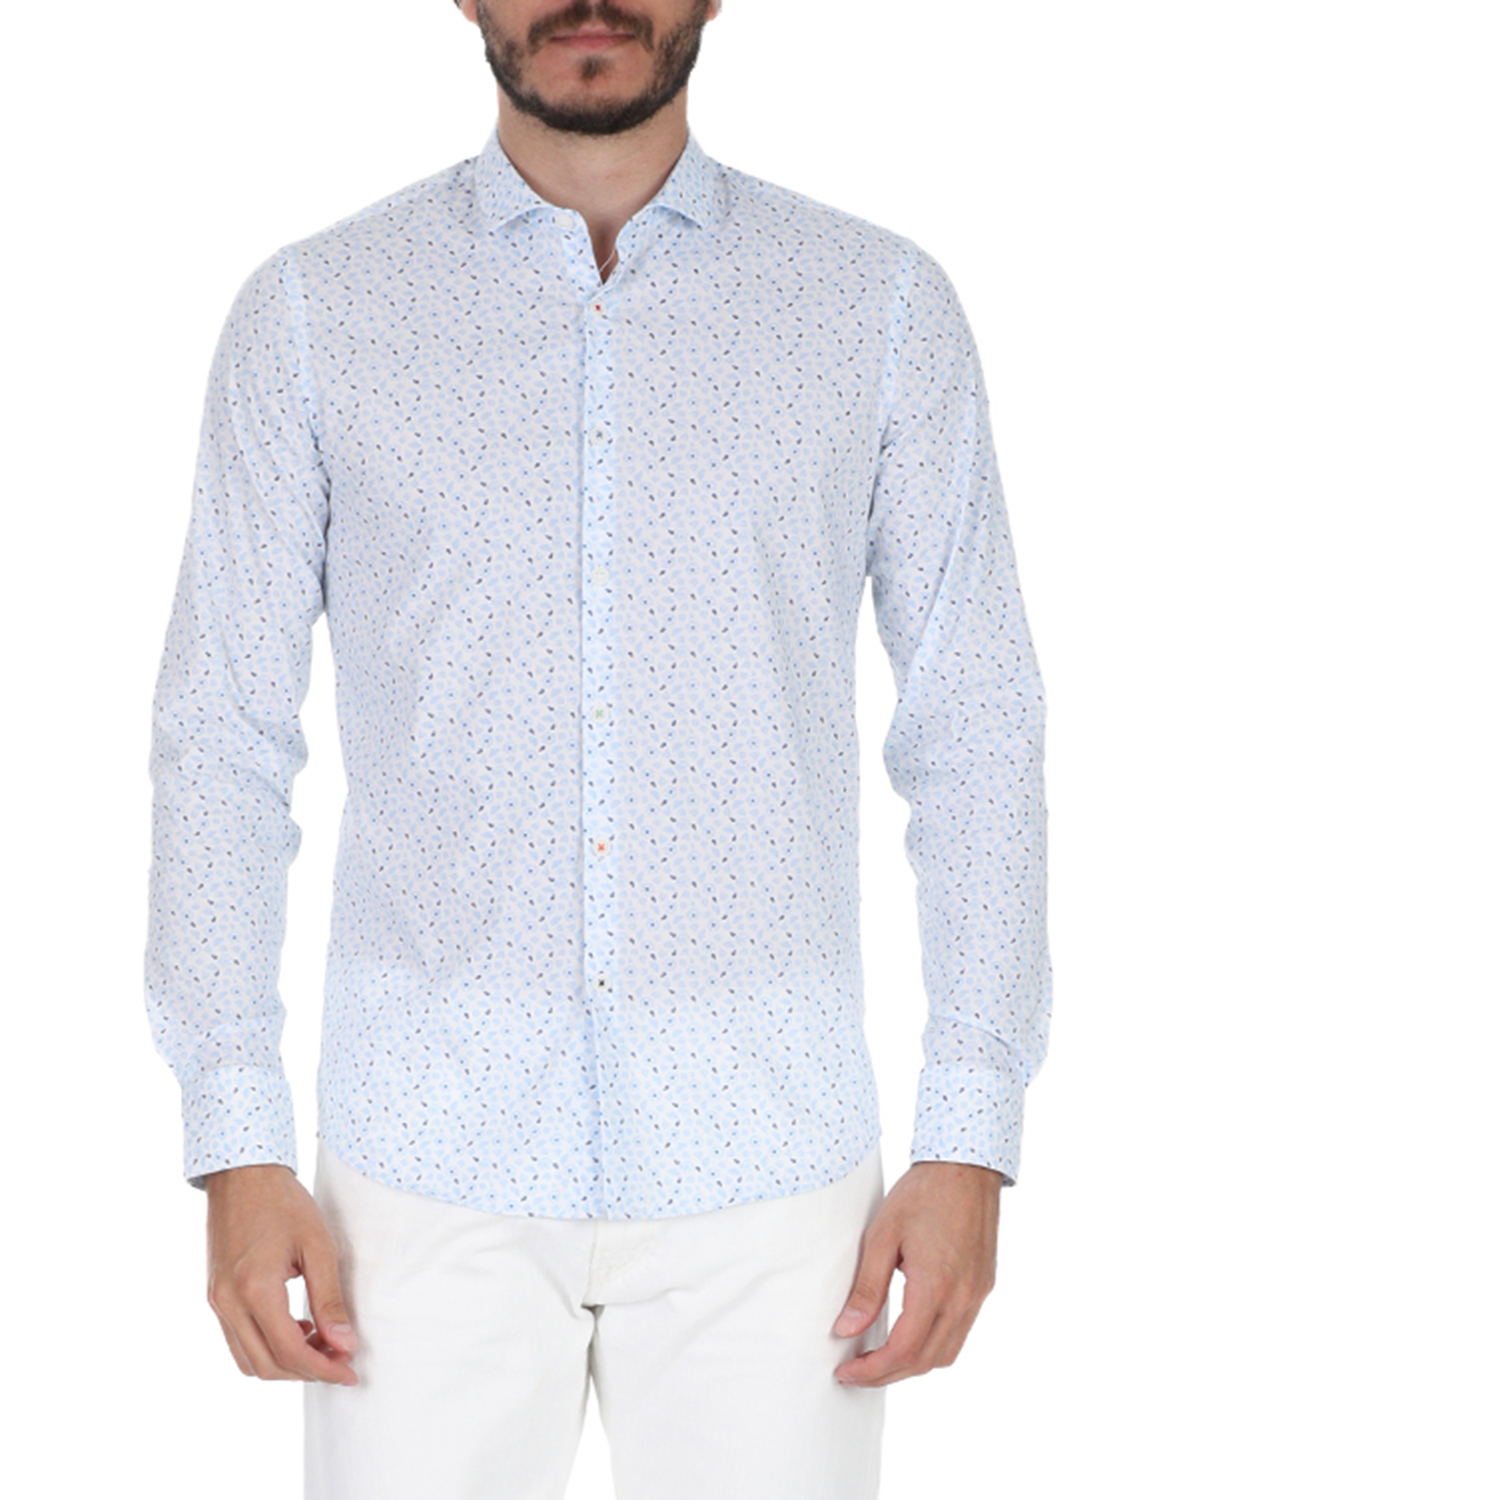 Ανδρικά/Ρούχα/Πουκάμισα/Μακρυμάνικα SSEINSE - Ανδρικό πουκάμισο SSEINSE λευκό μπλε